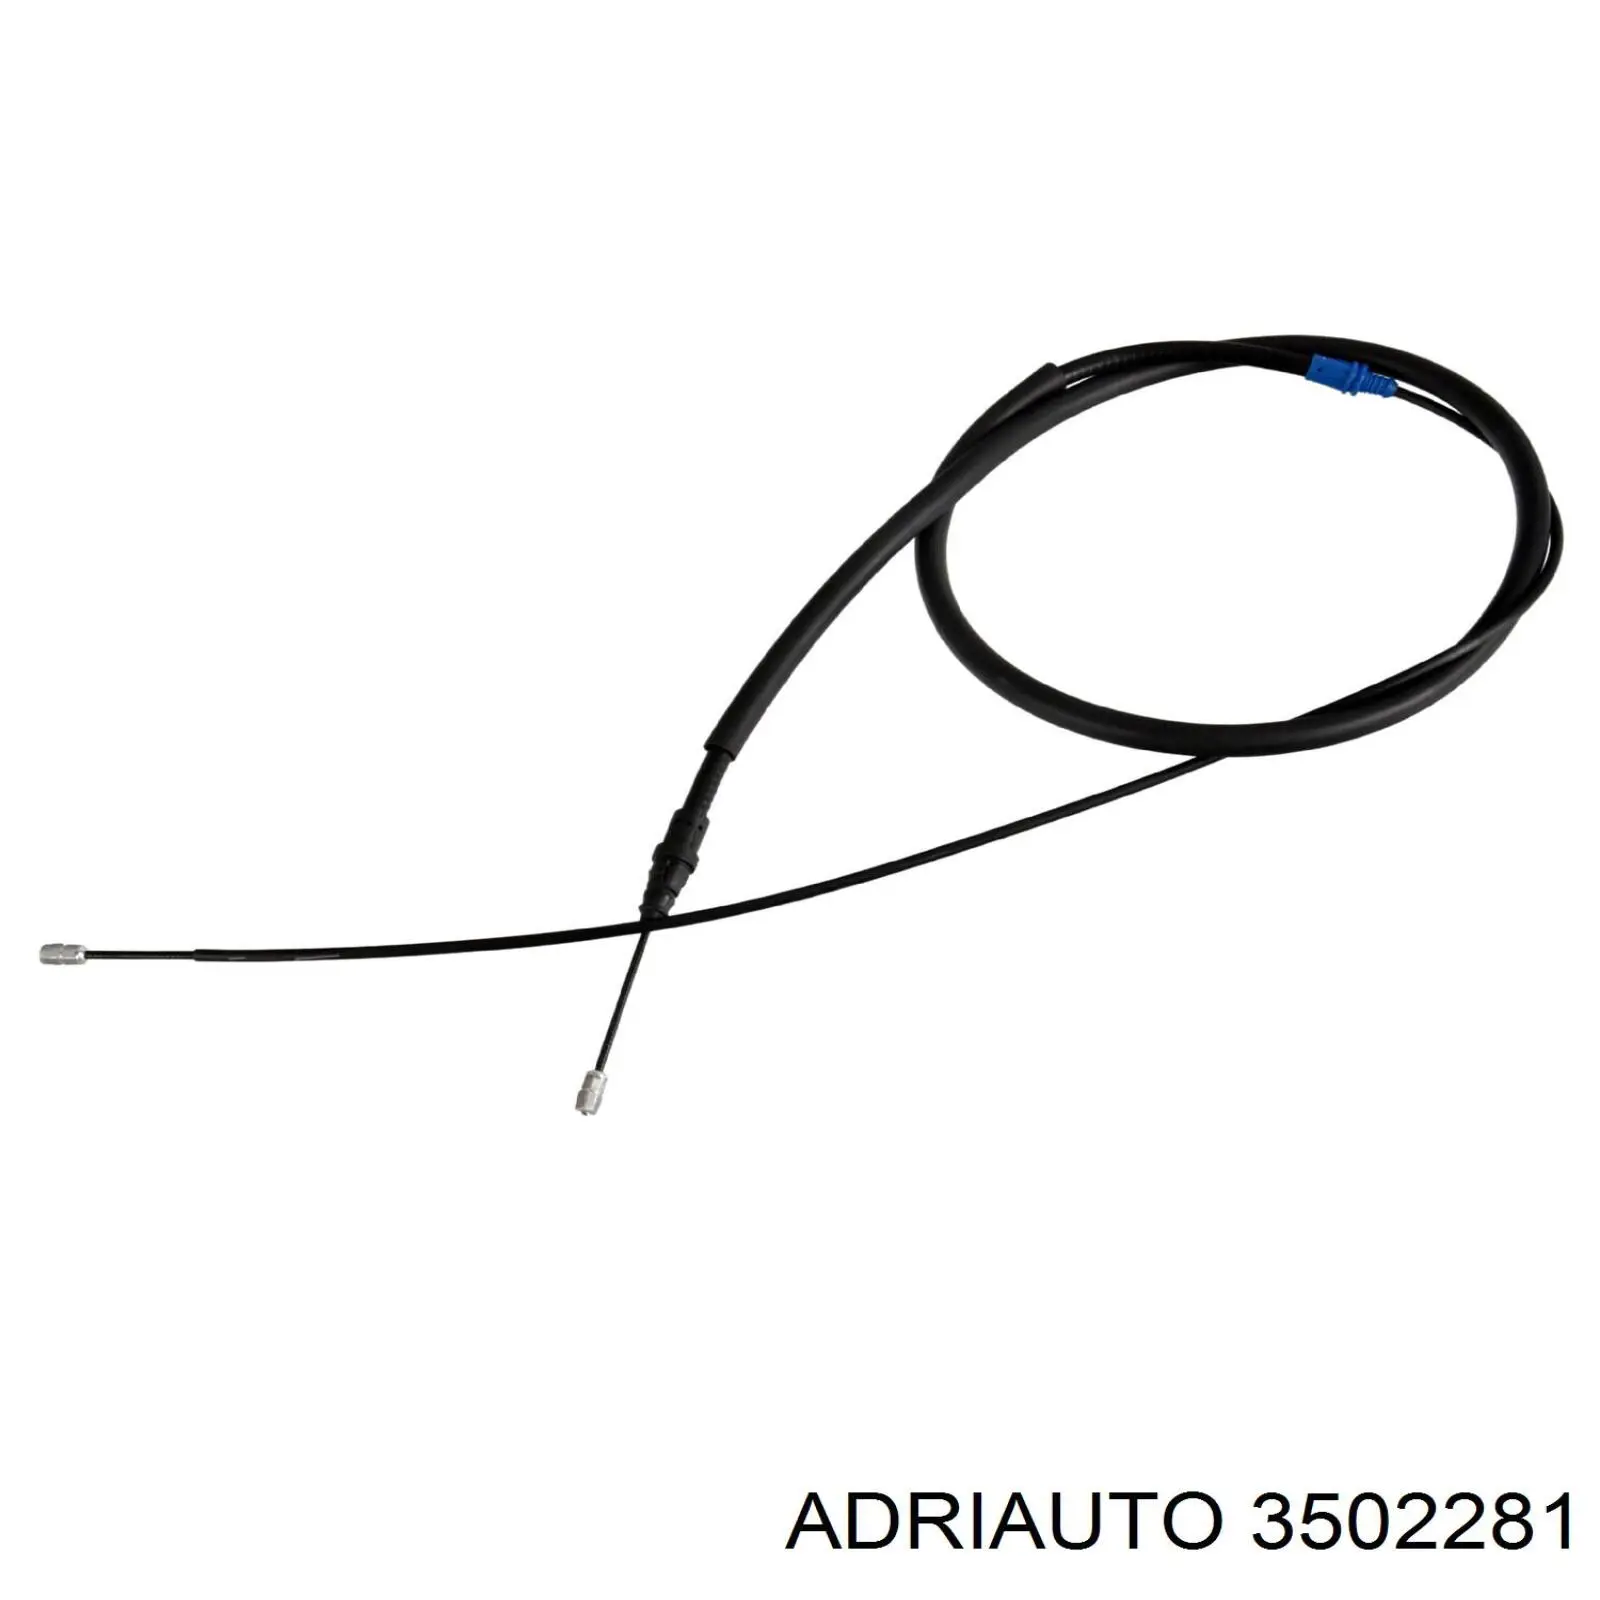 3502281 Adriauto трос ручного тормоза задний правый/левый